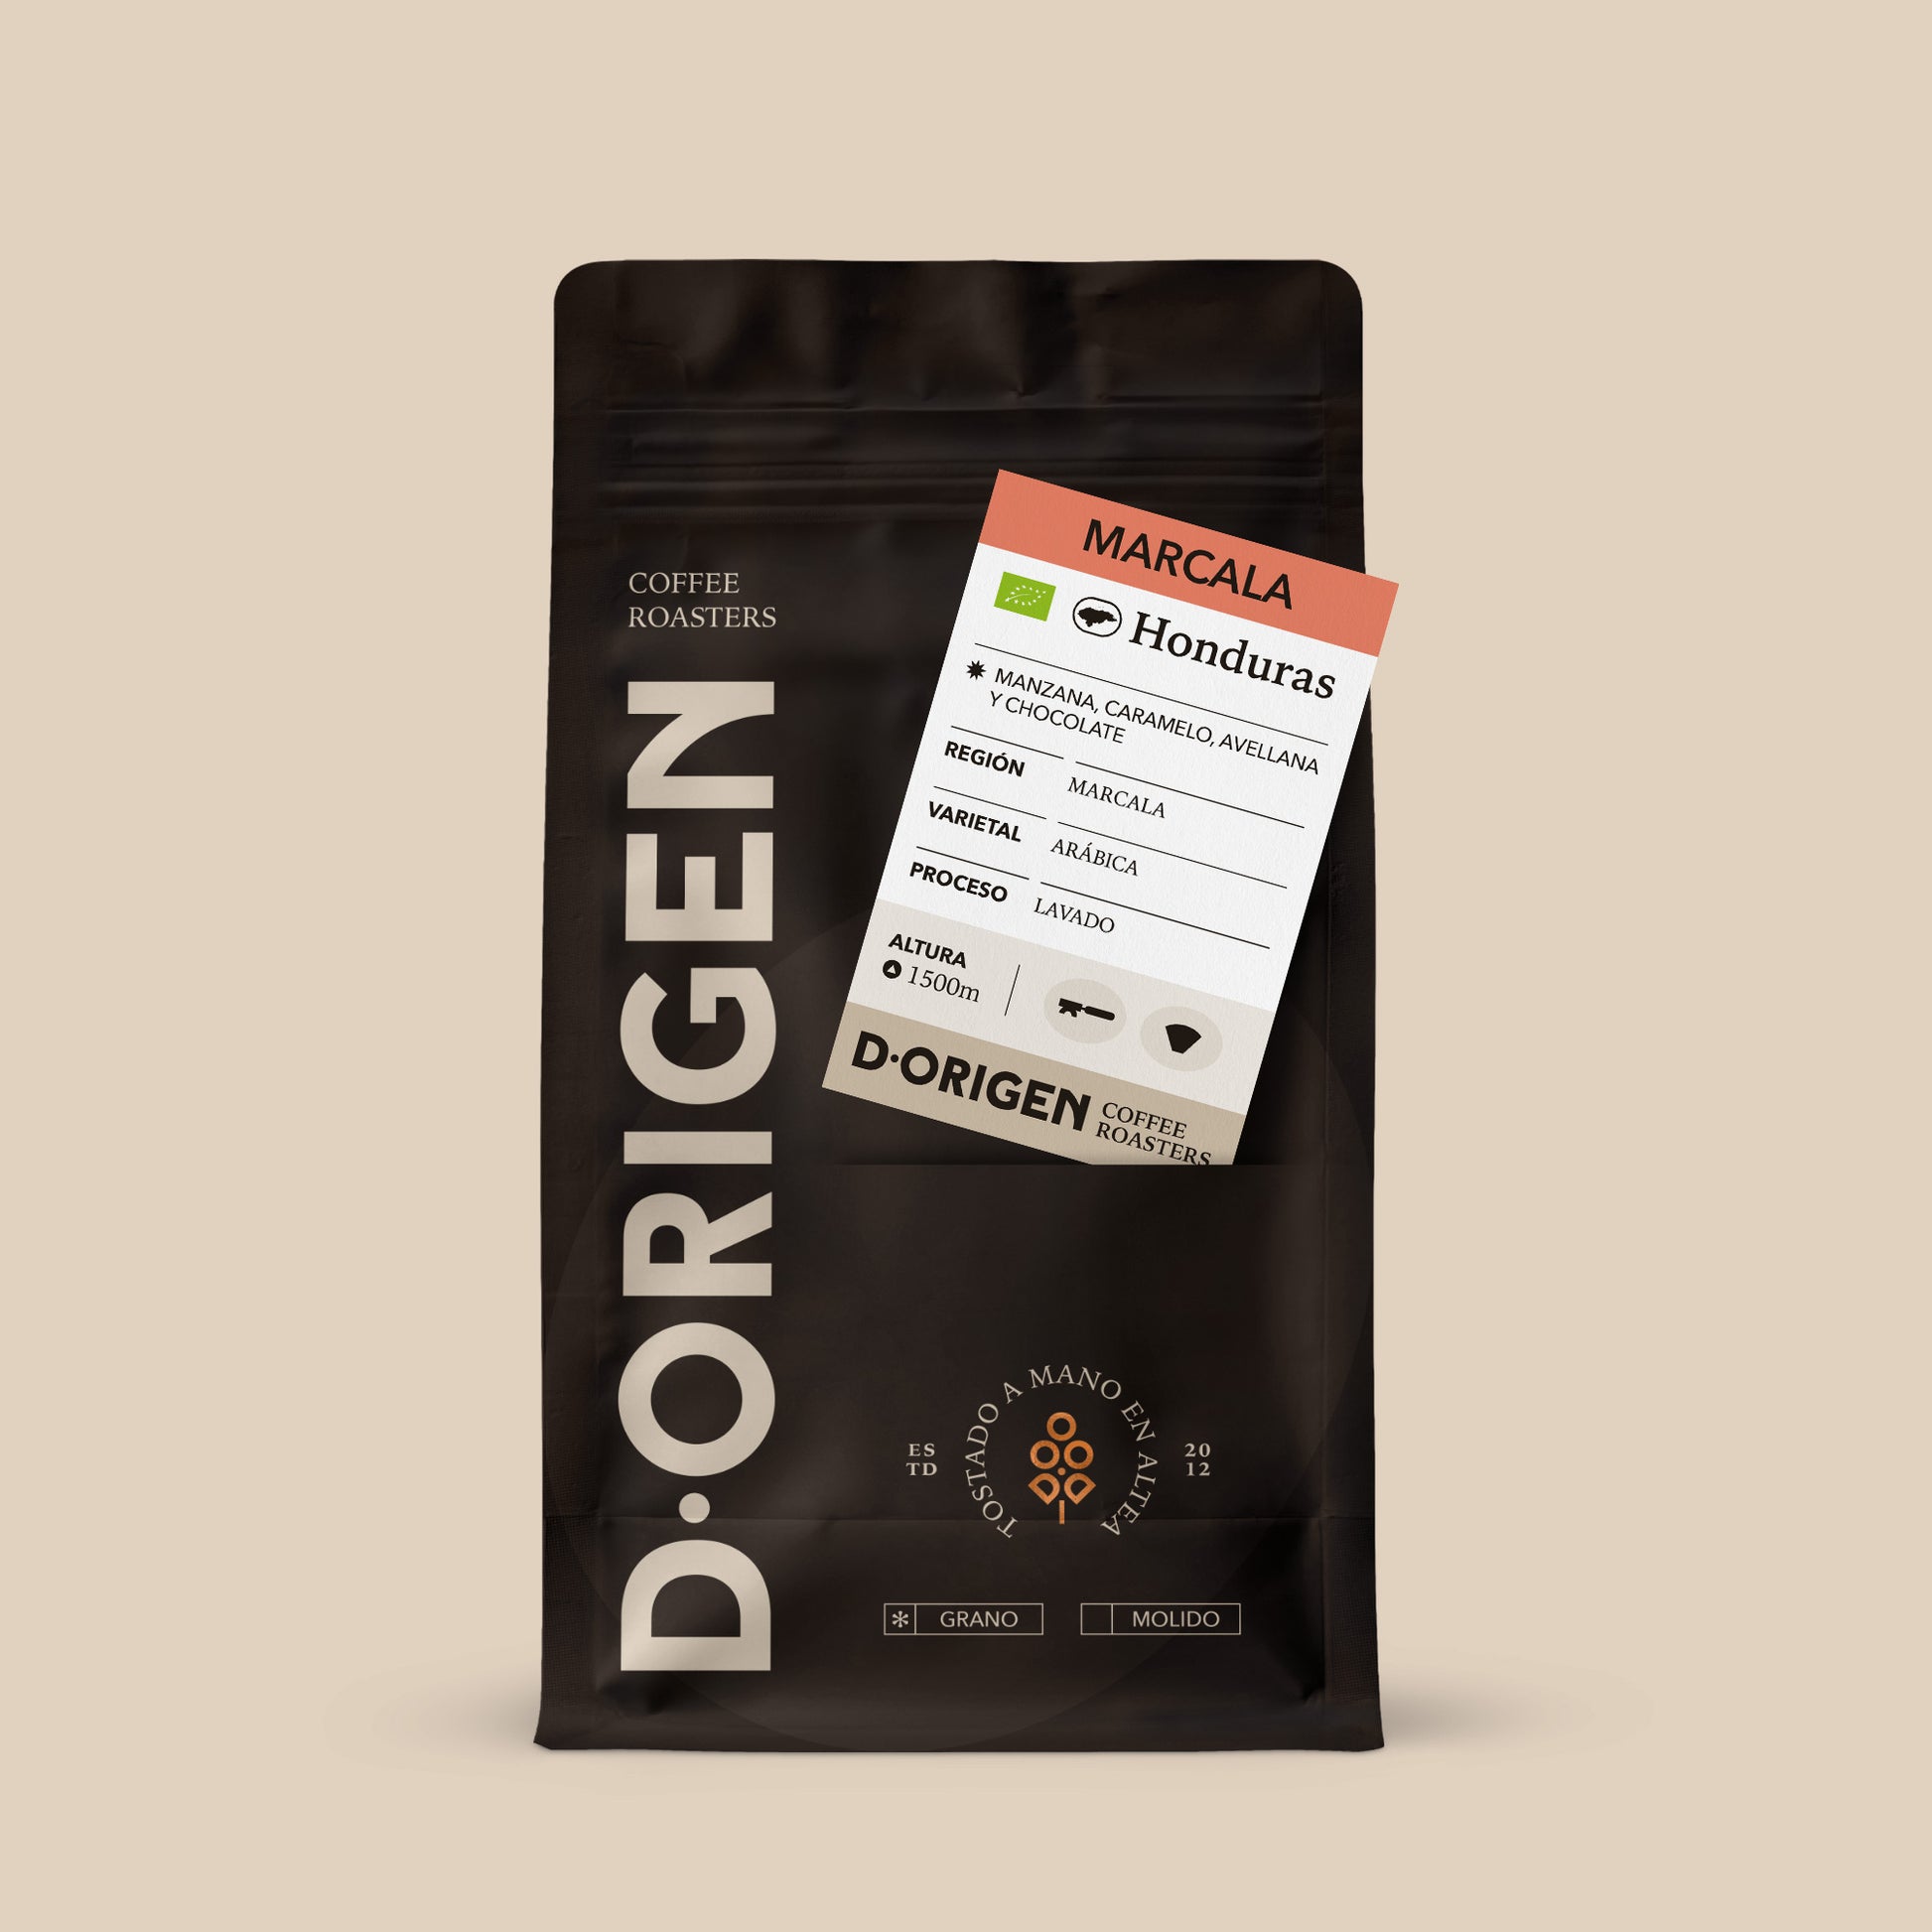 MARCALA - D·Origen Coffee Roasters